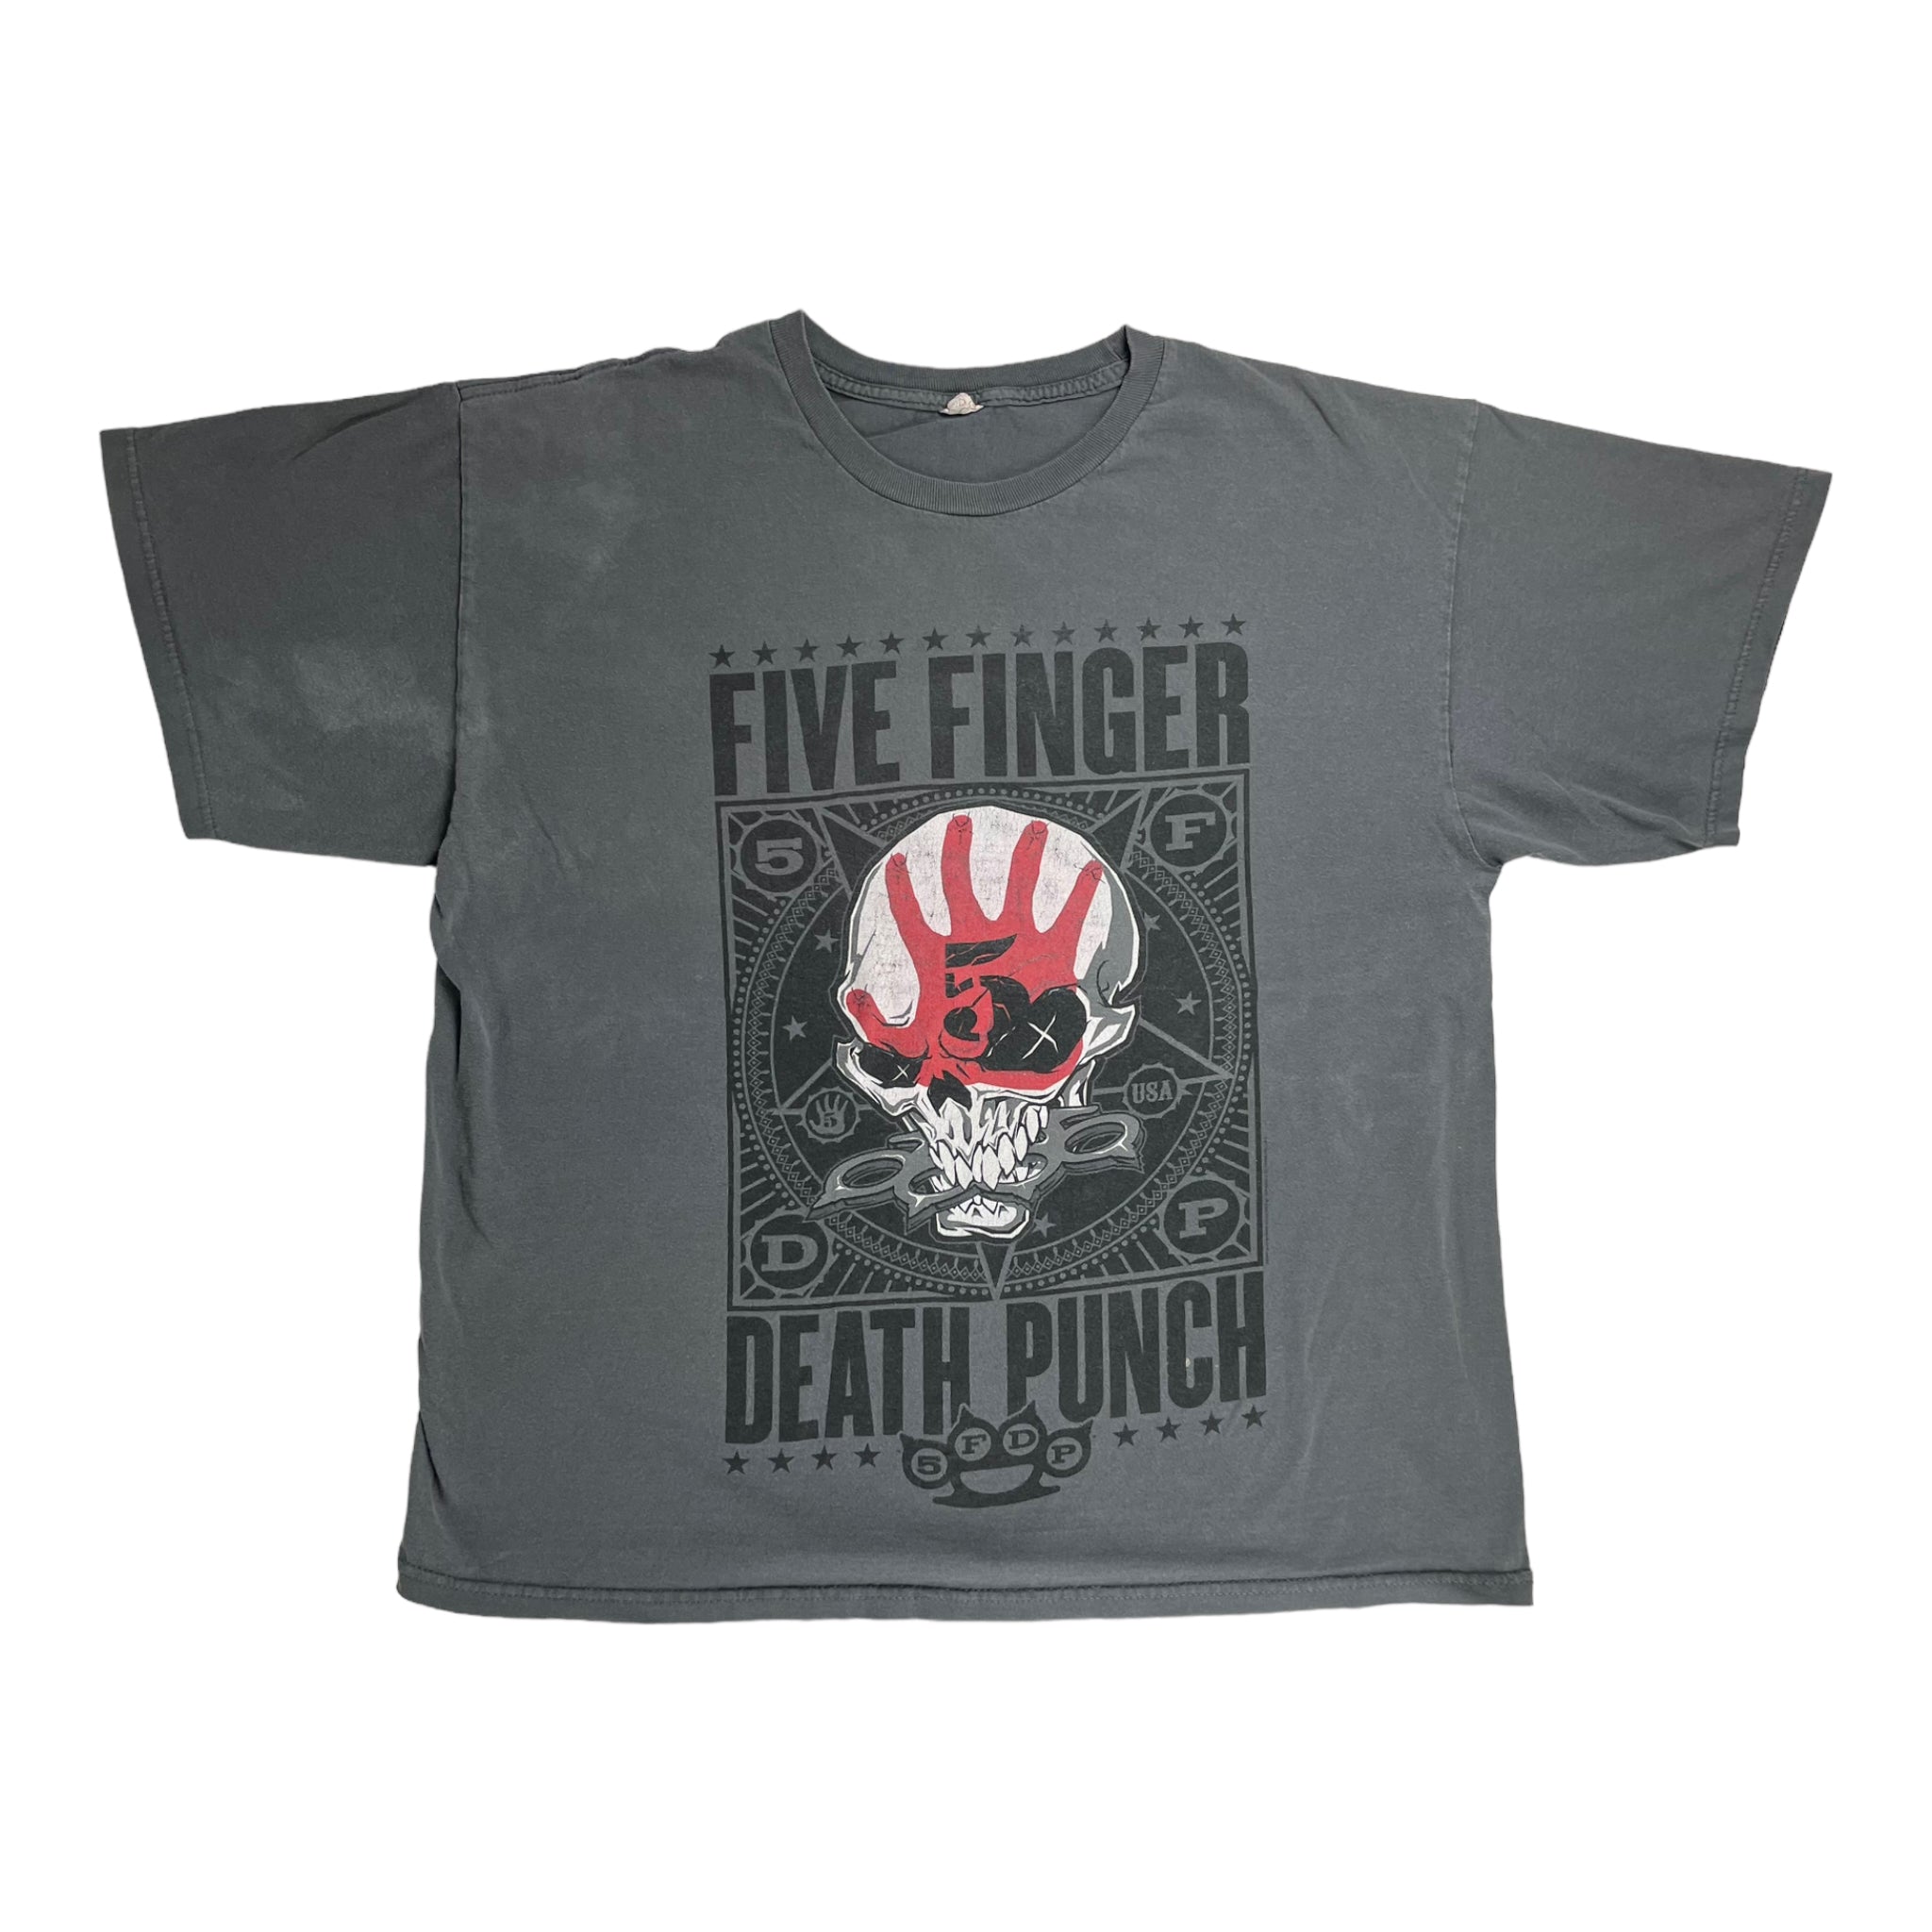 Vintage Five Finger Death Punch T-Shirt